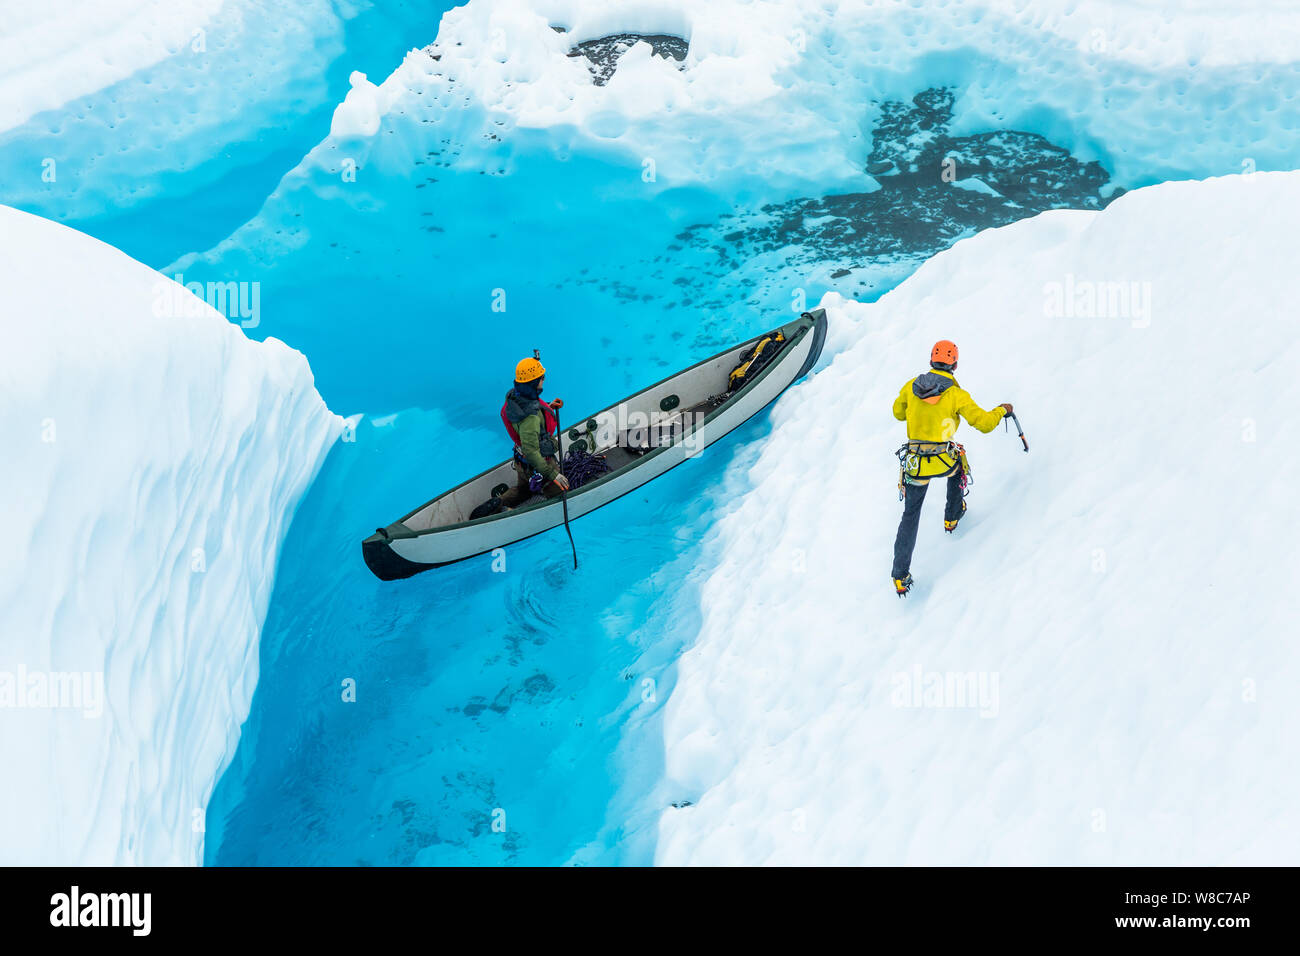 Sul ghiacciaio Matanuska, un grande lago blu si siede in cima al ghiacciaio. Nel lago di una canoa trasporta due scalatori attraverso il blu dell'acqua. Uno si erge un Foto Stock